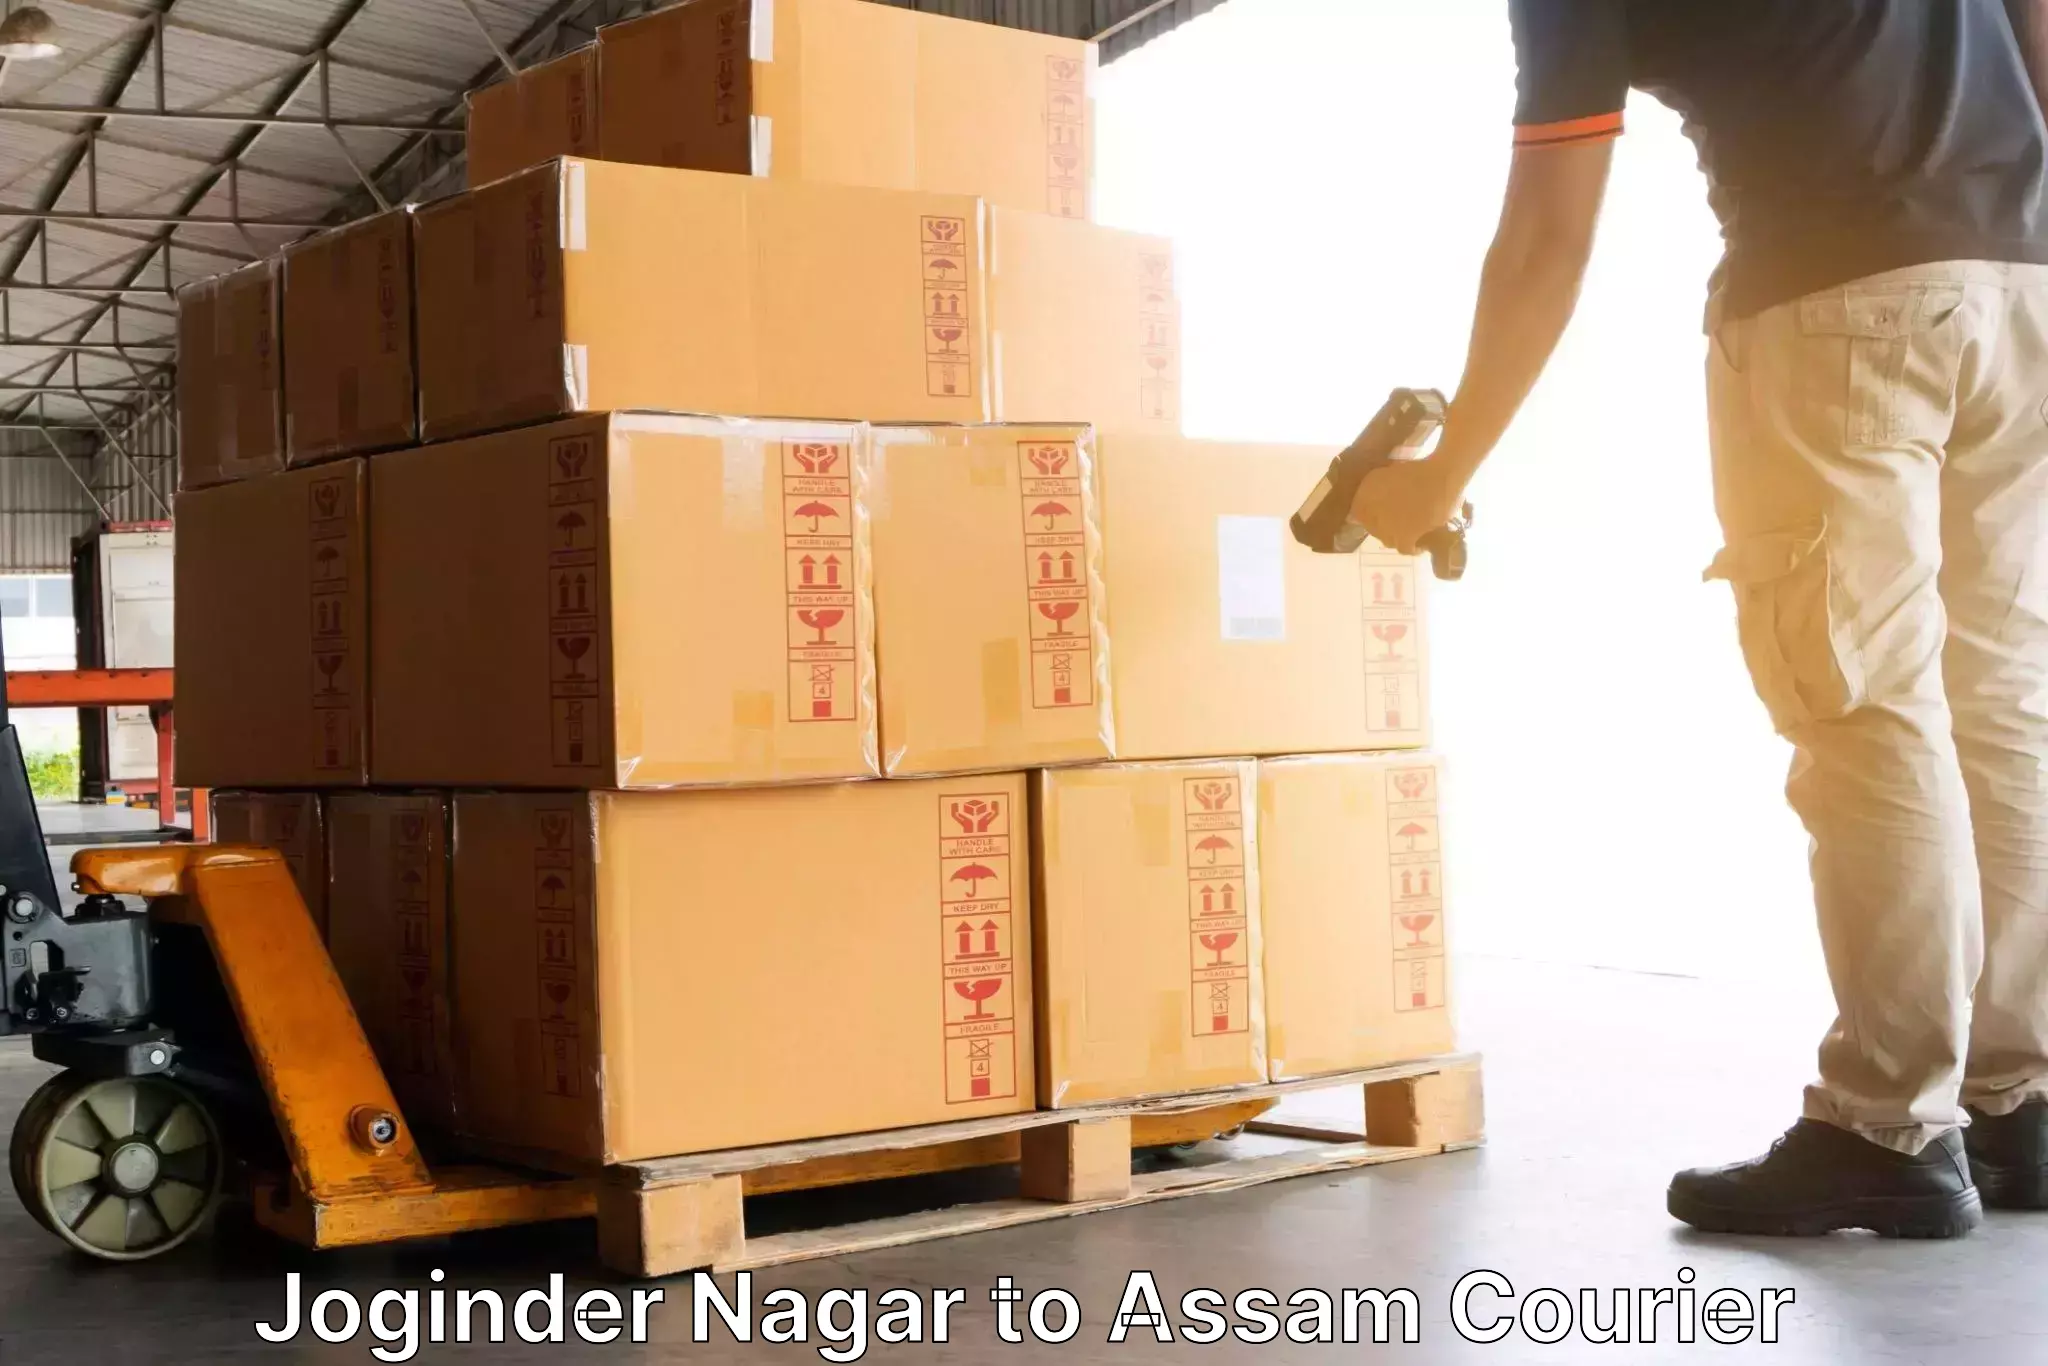 Global shipping solutions Joginder Nagar to Rowta